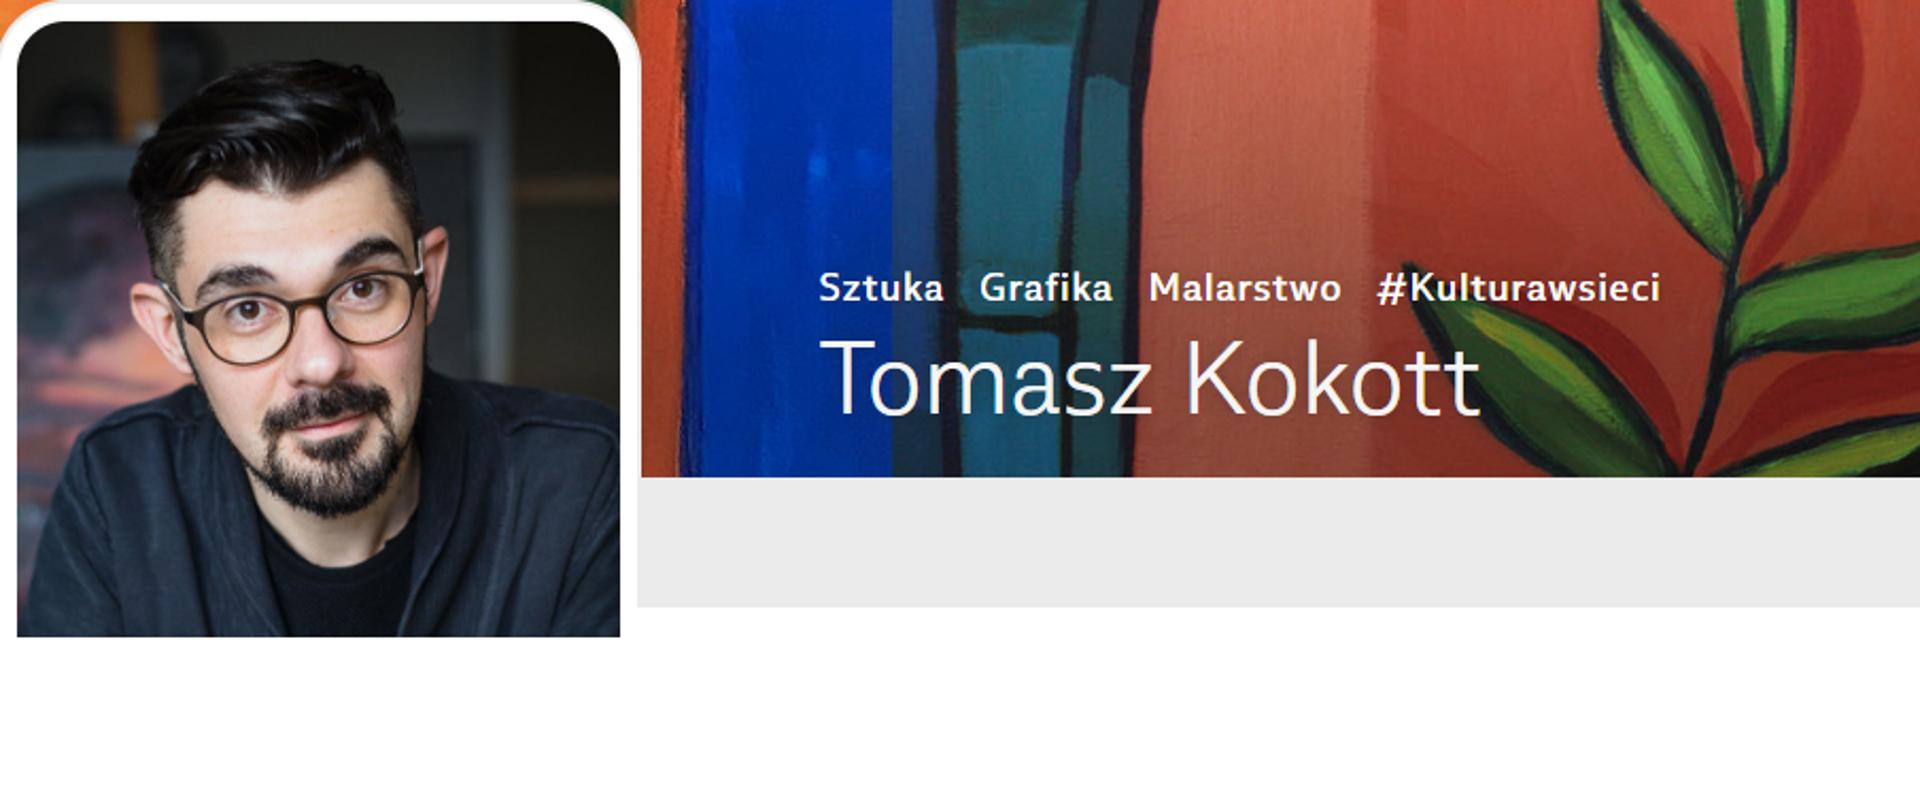 Tomasz Kokott